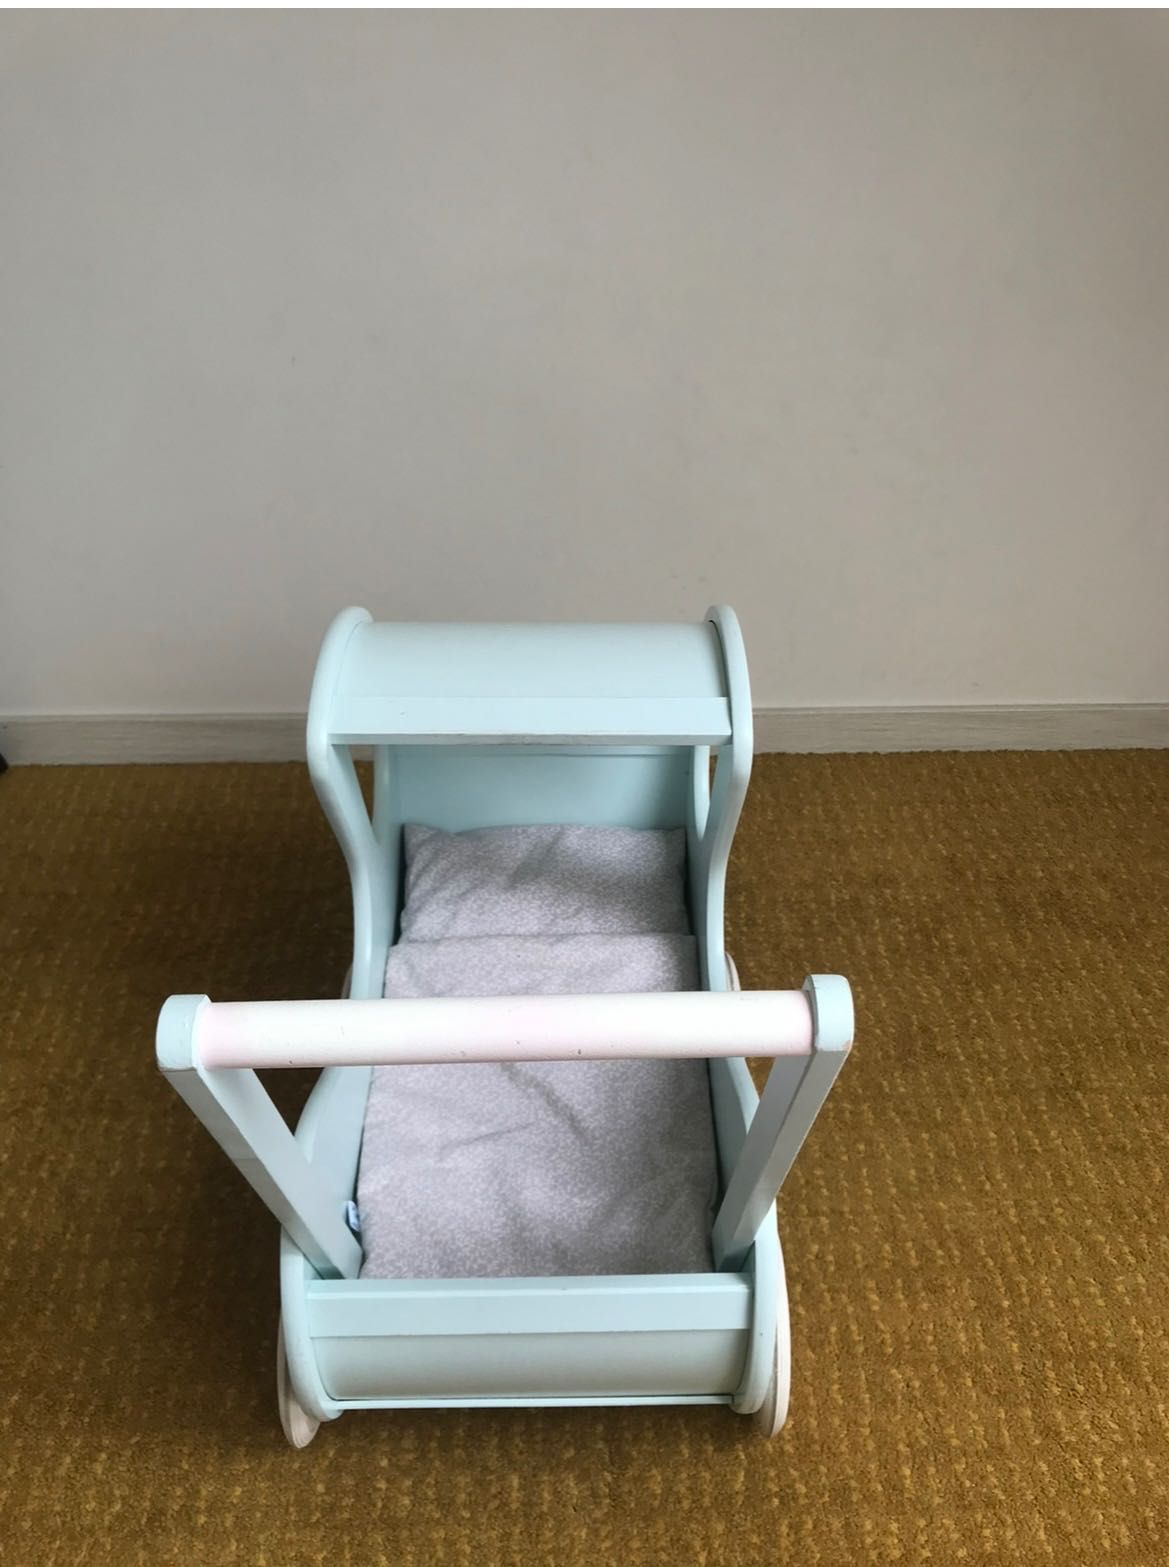 Drewniany wózek dla lalek / pchacz